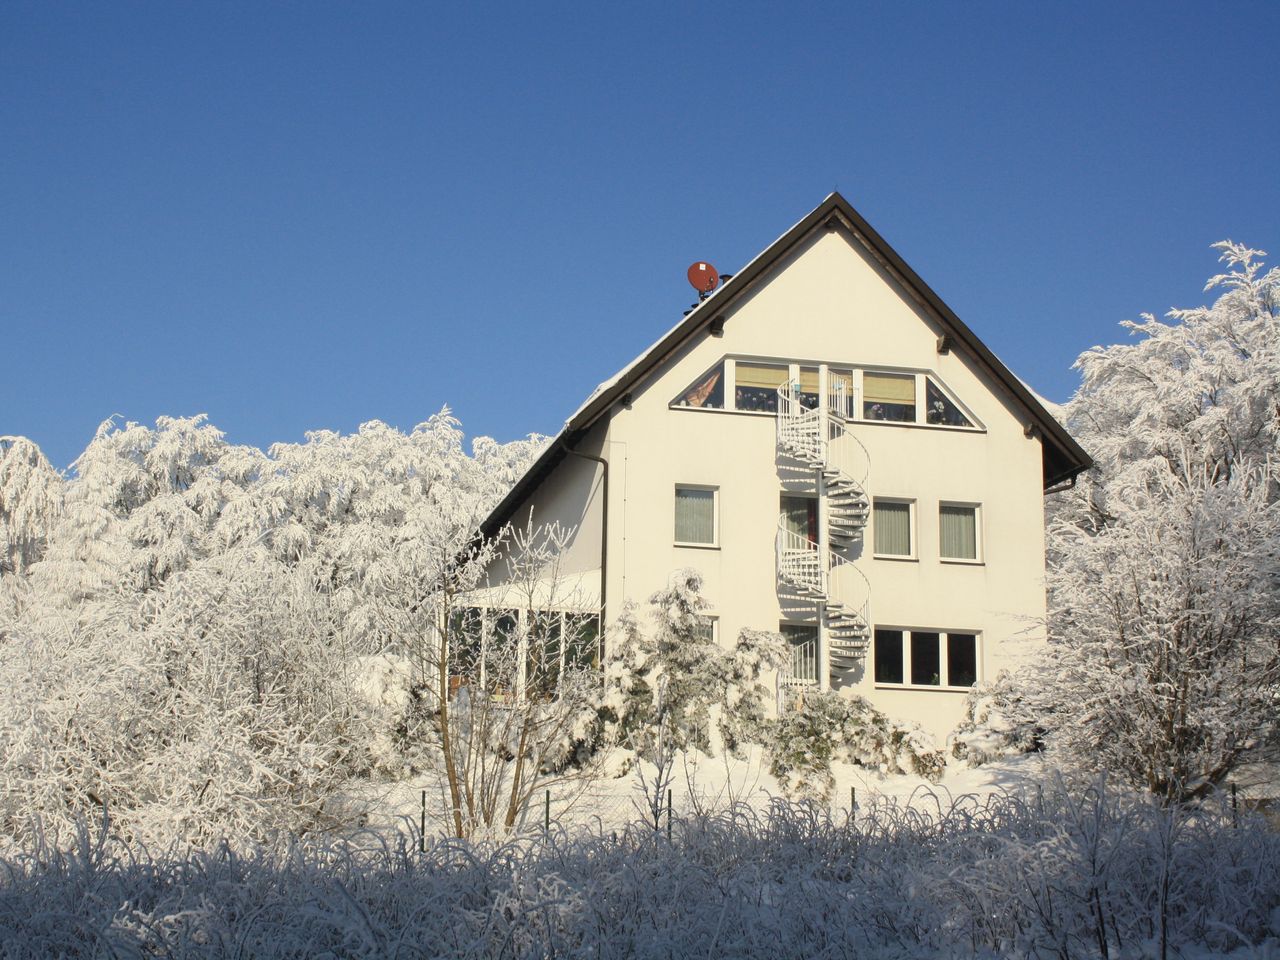 3 Tage Winter und Wellness im Harz